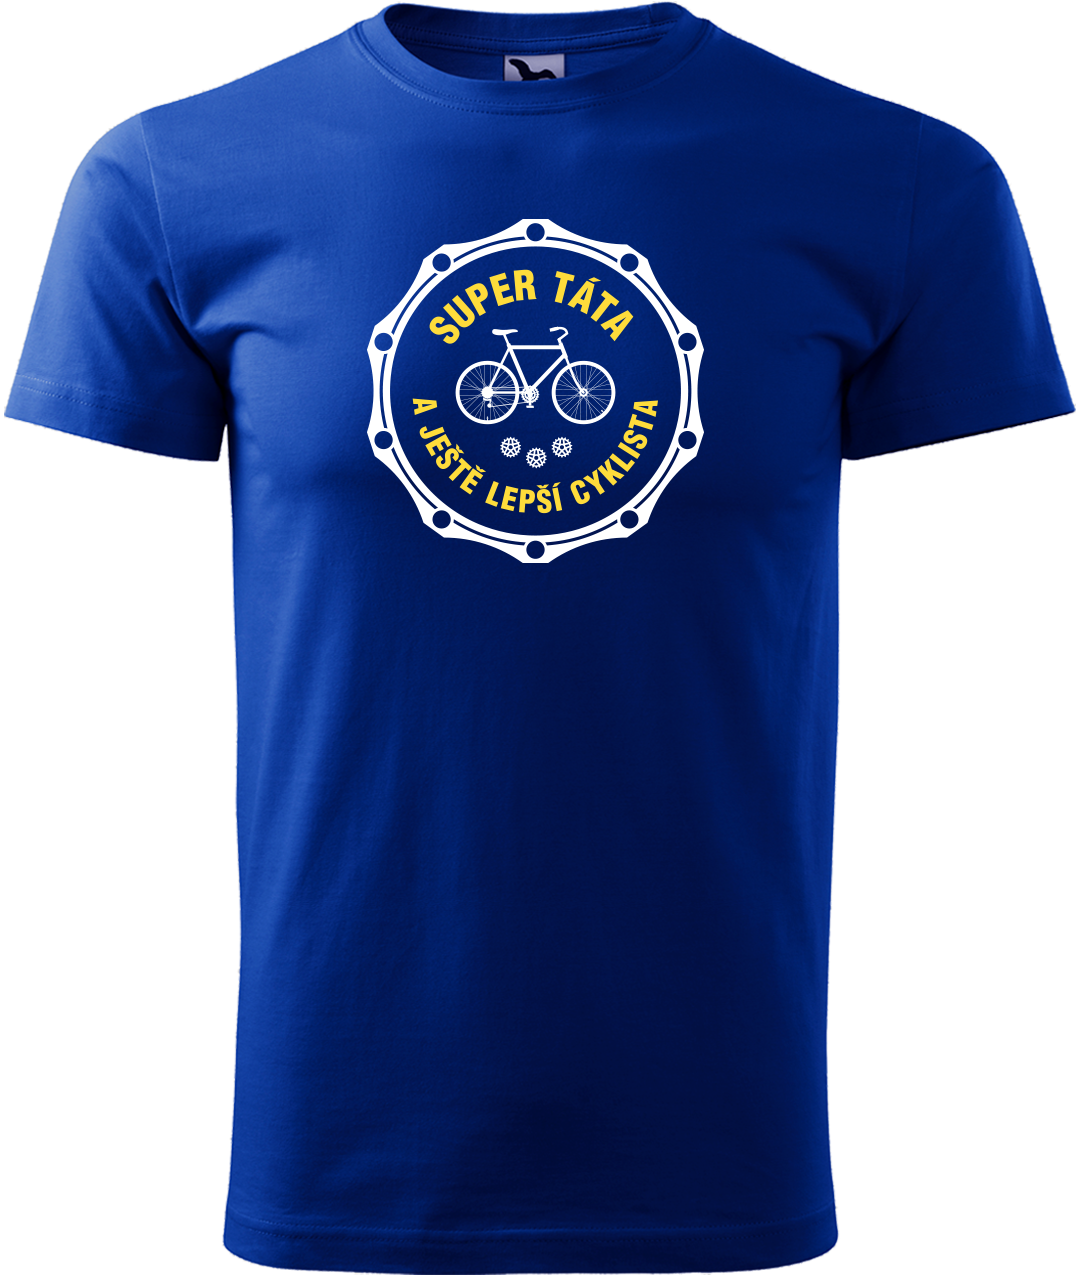 Pánské tričko pro cyklistu - Super táta a ještě lepší cyklista Velikost: M, Barva: Královská modrá (05)